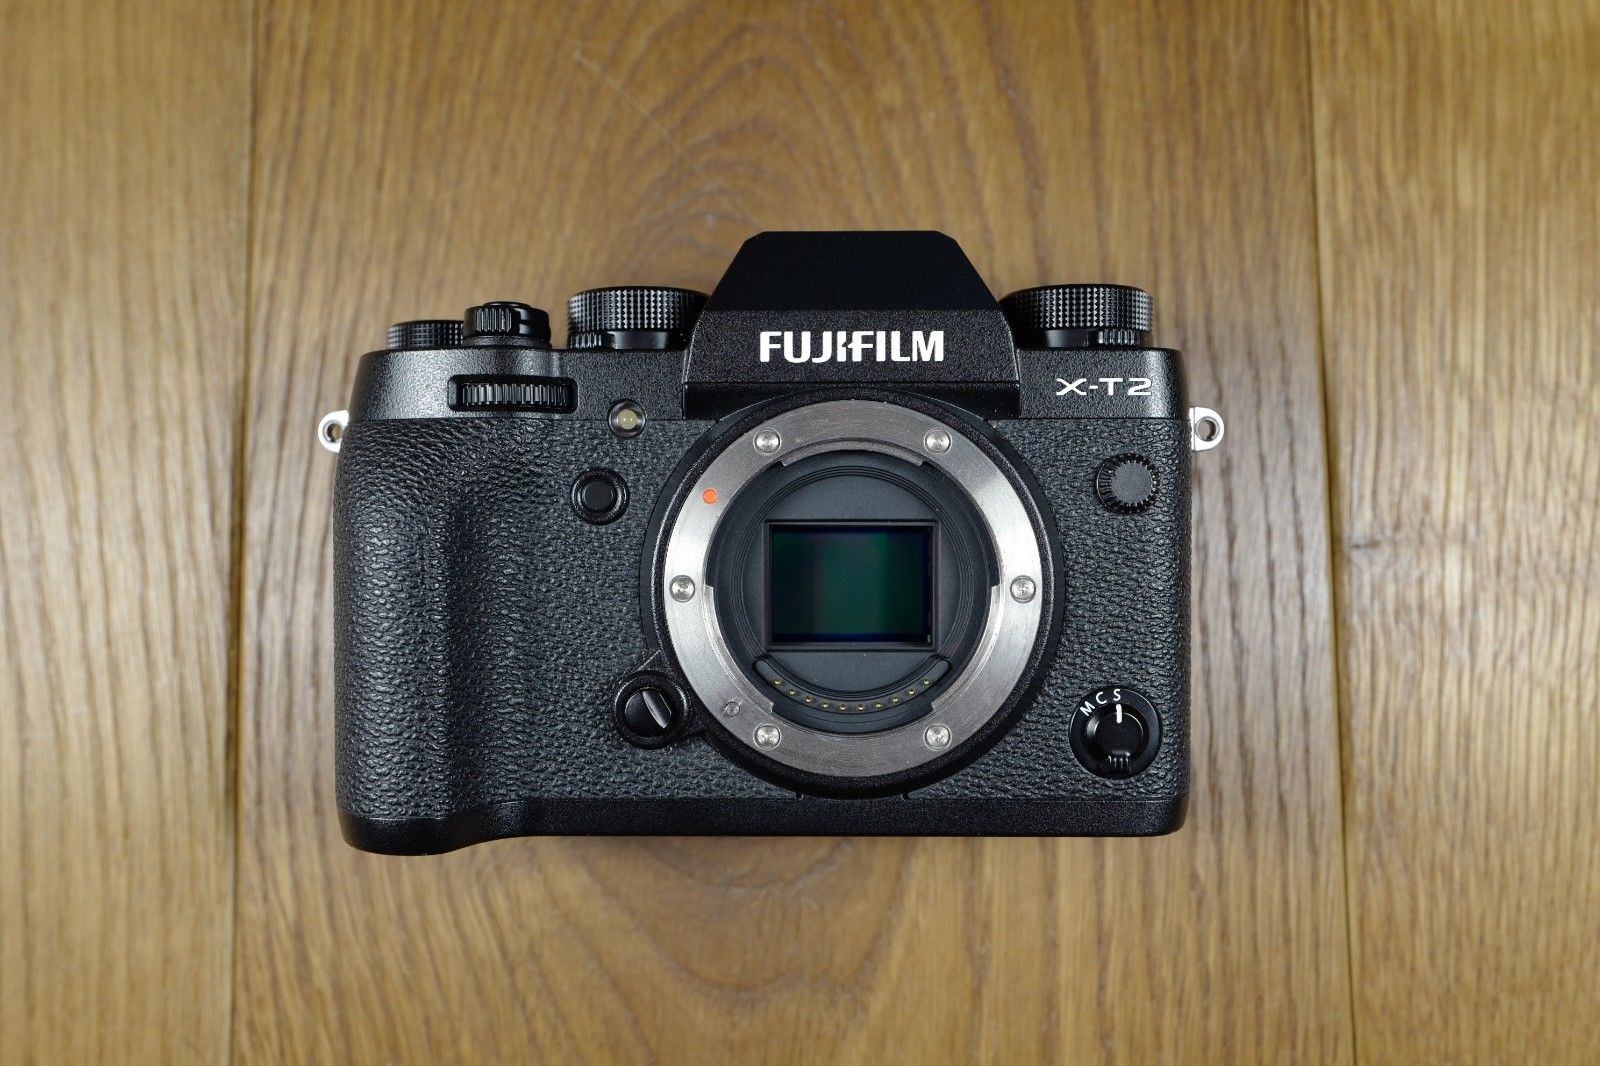 Fujifilm X-T2 24.3MP Digitalkamera - Gehäuse in Schwarz - 1 Jahr alt